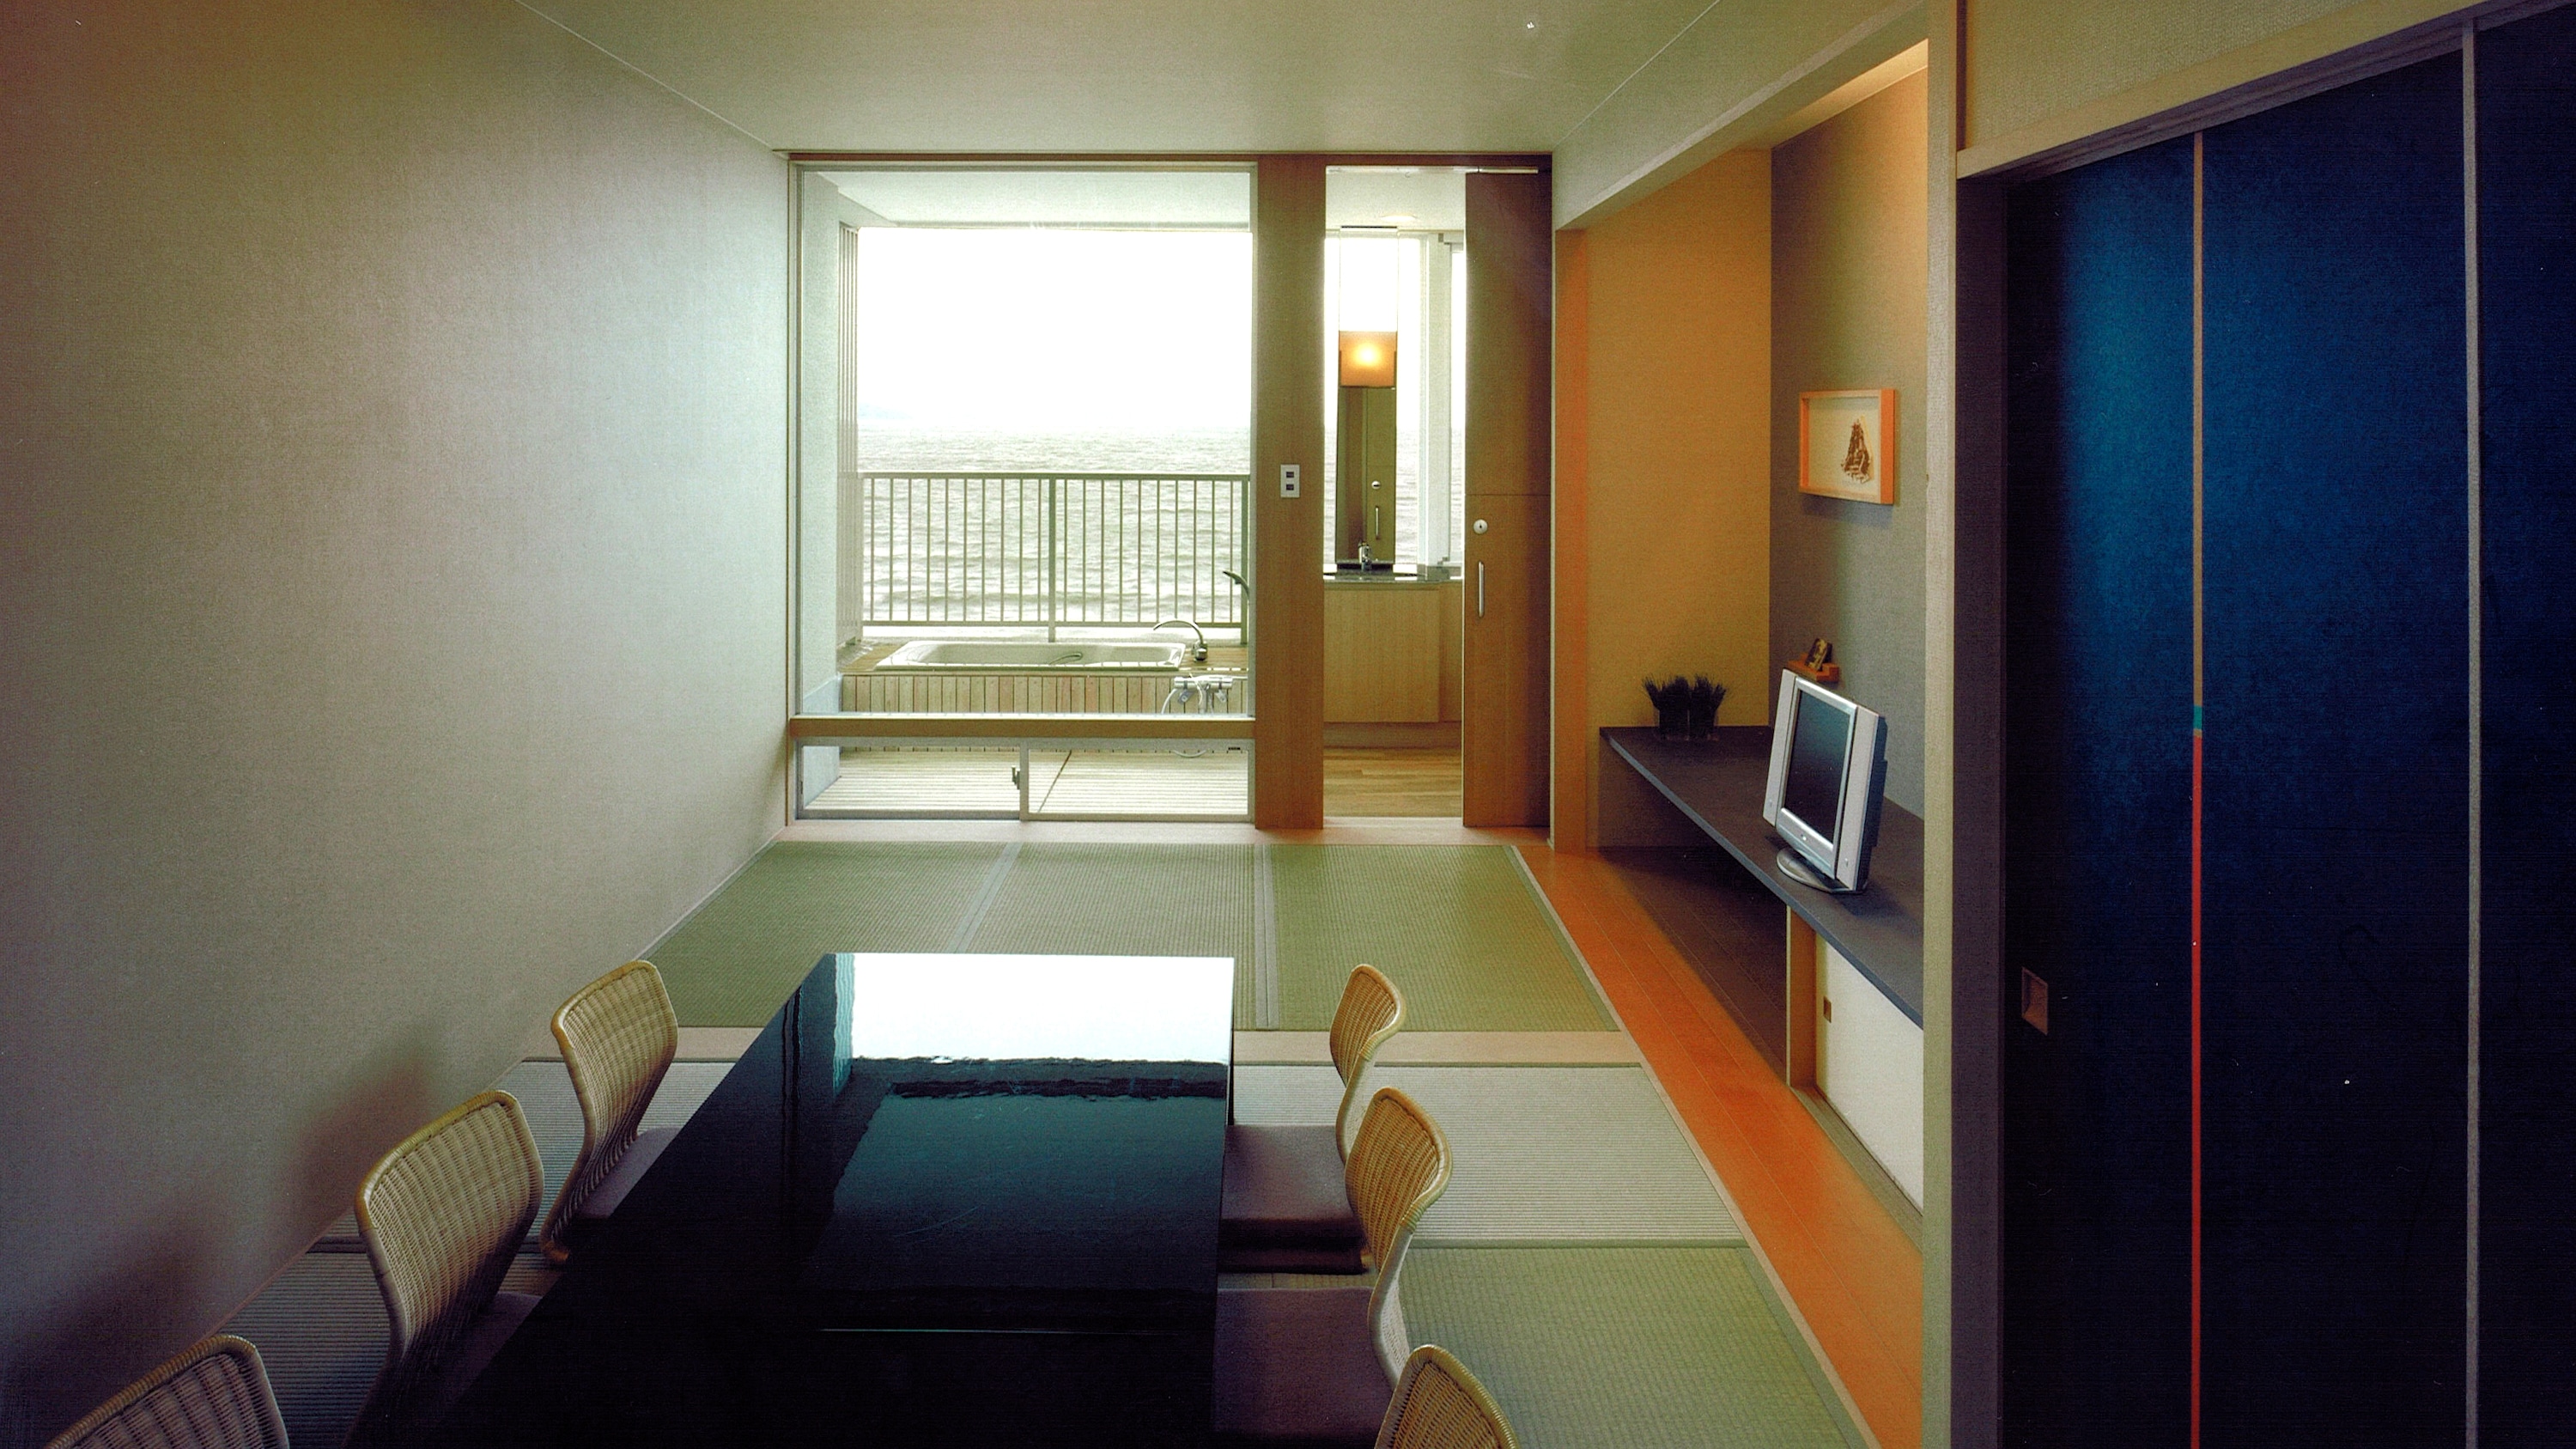 [房间] Morar House 日式房间 / 海滨 / 现代日式房间，阳台上有观景浴缸 / 禁烟